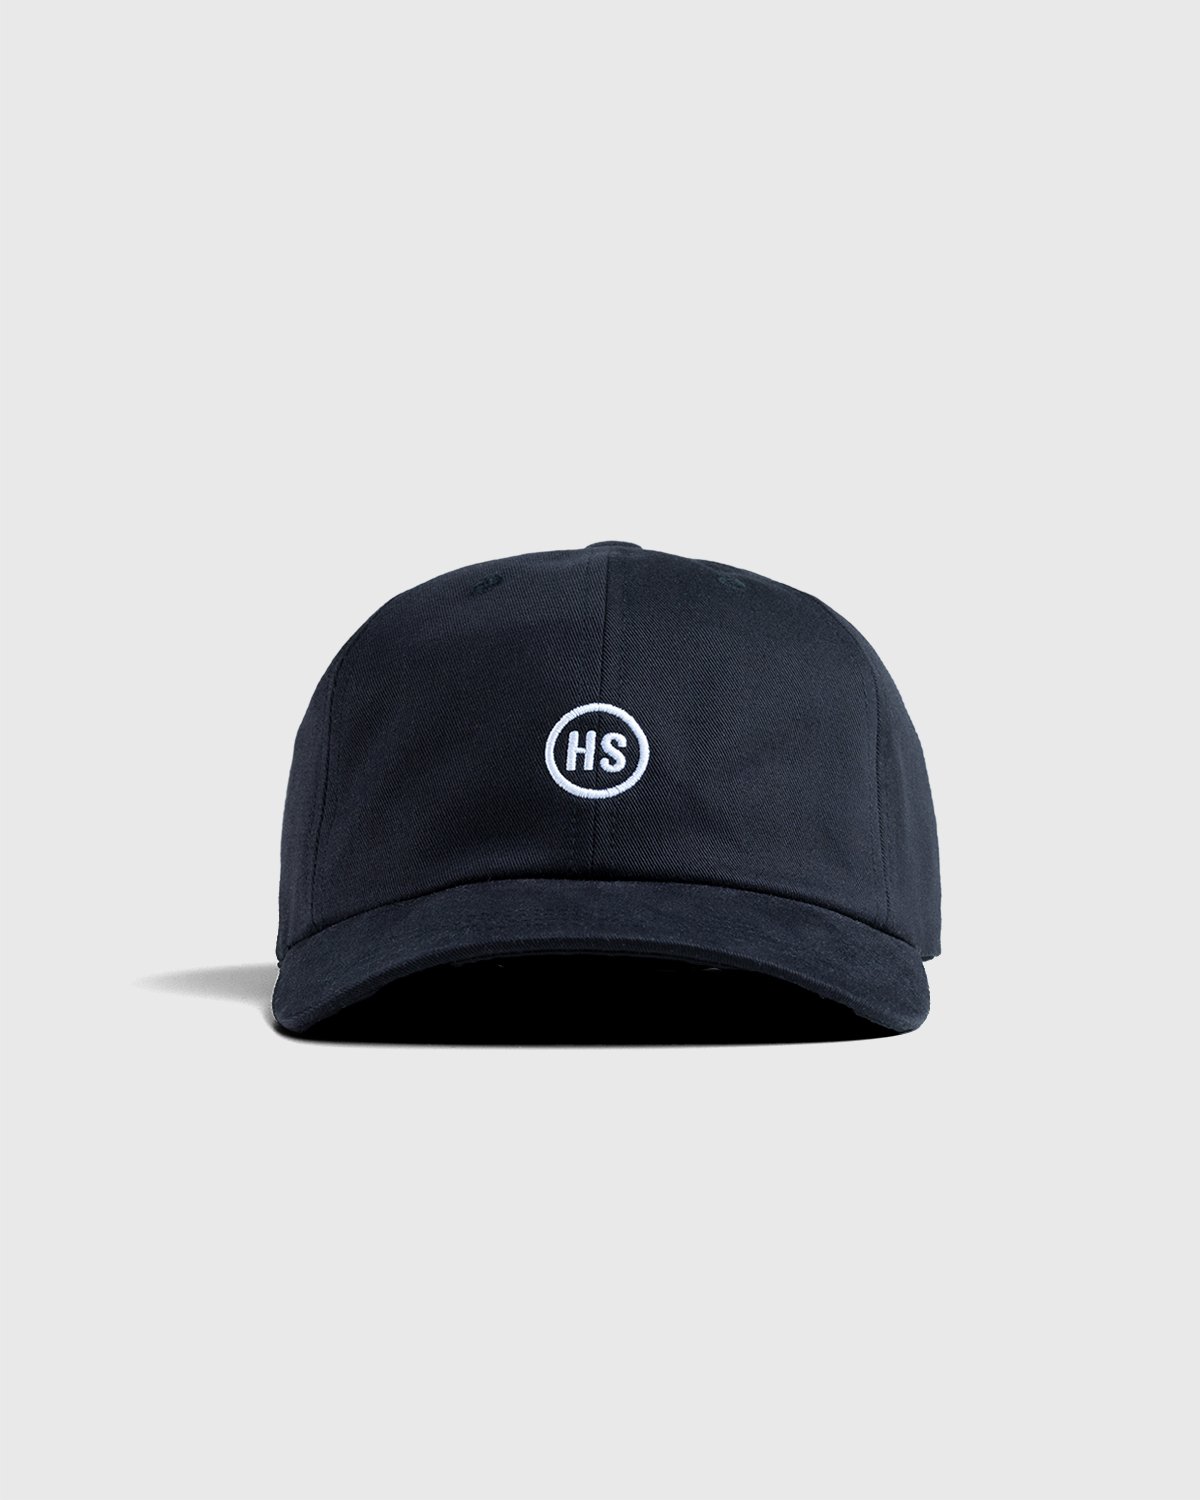 Highsnobiety – Baseball Cap Black | Highsnobiety Shop